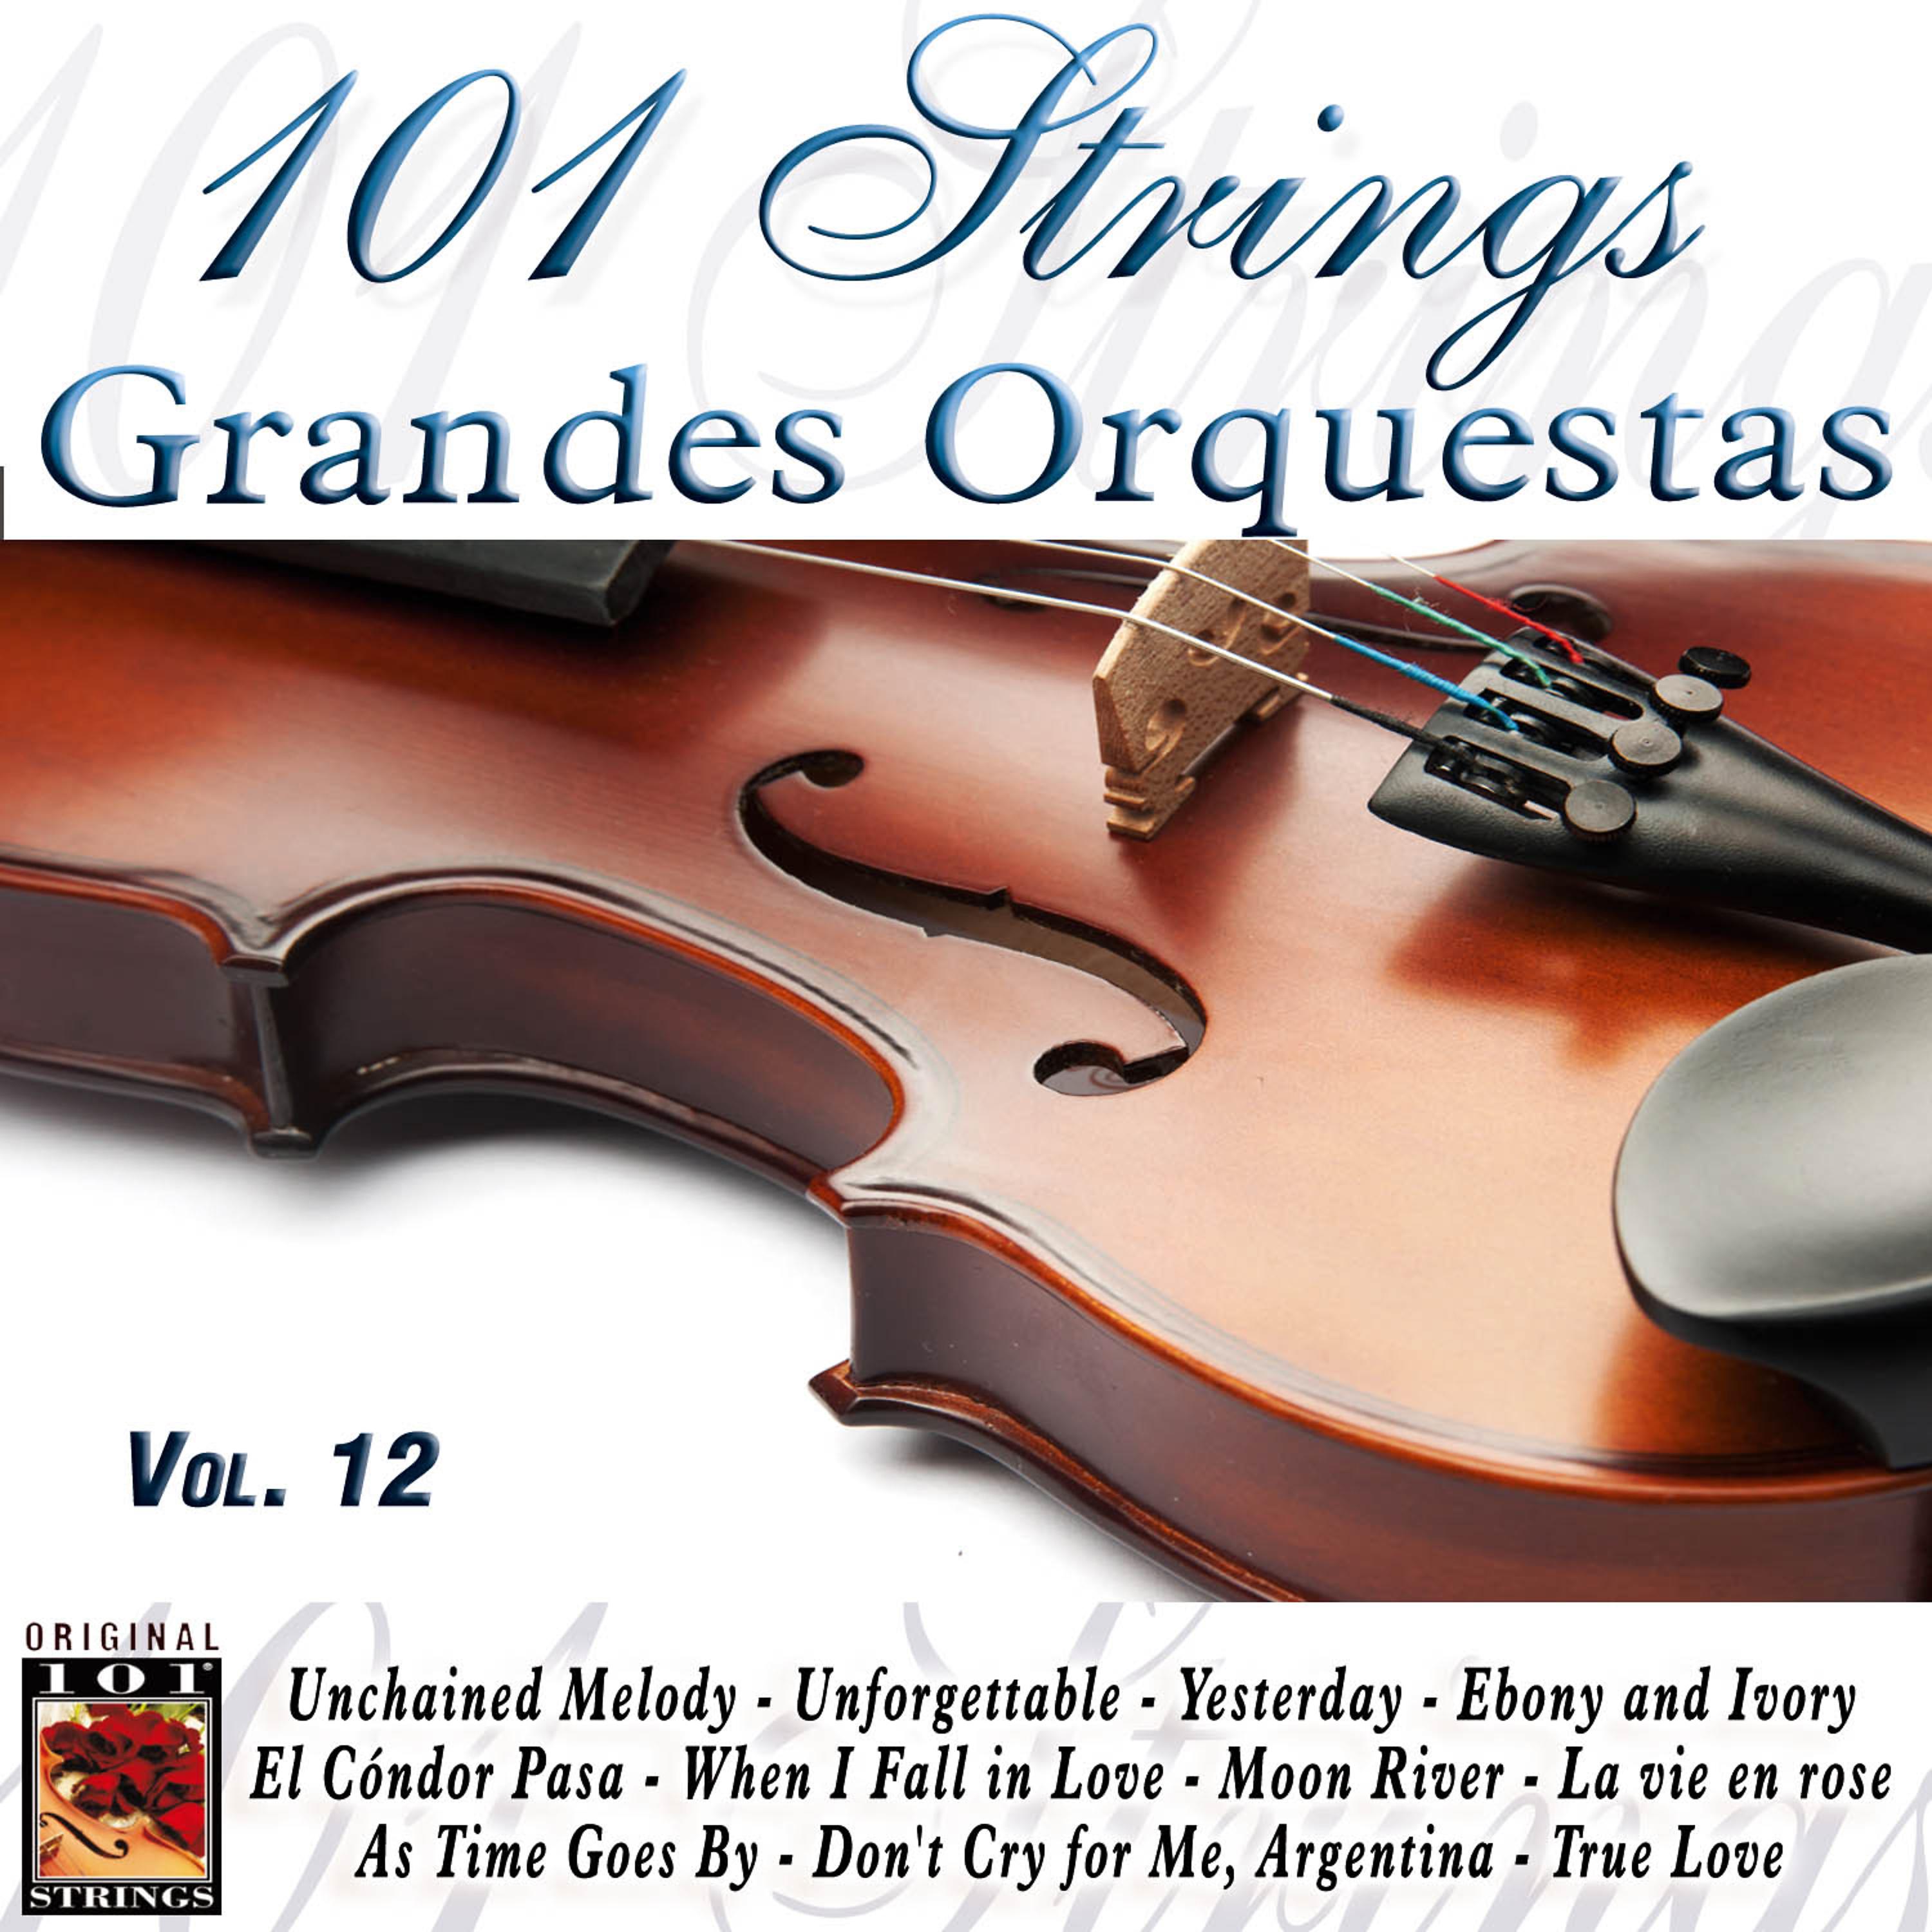 Постер альбома 101 Strings Grandes Orquestas Vol. 12